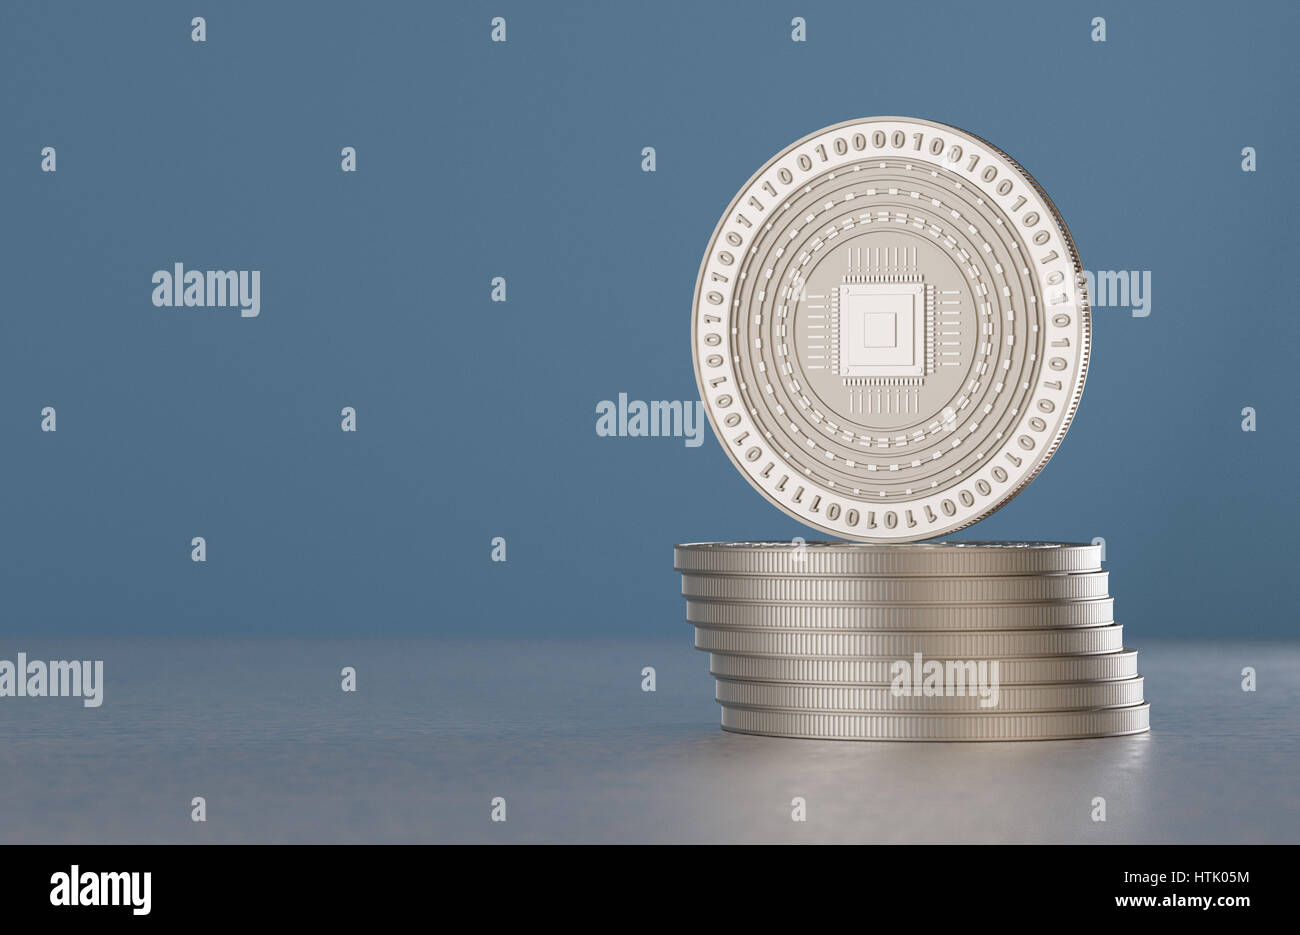 Pila di argento crypto-moneta monete con il simbolo della cpu come esempio per valuta digitale, servizi di online banking o fin-tech Foto Stock